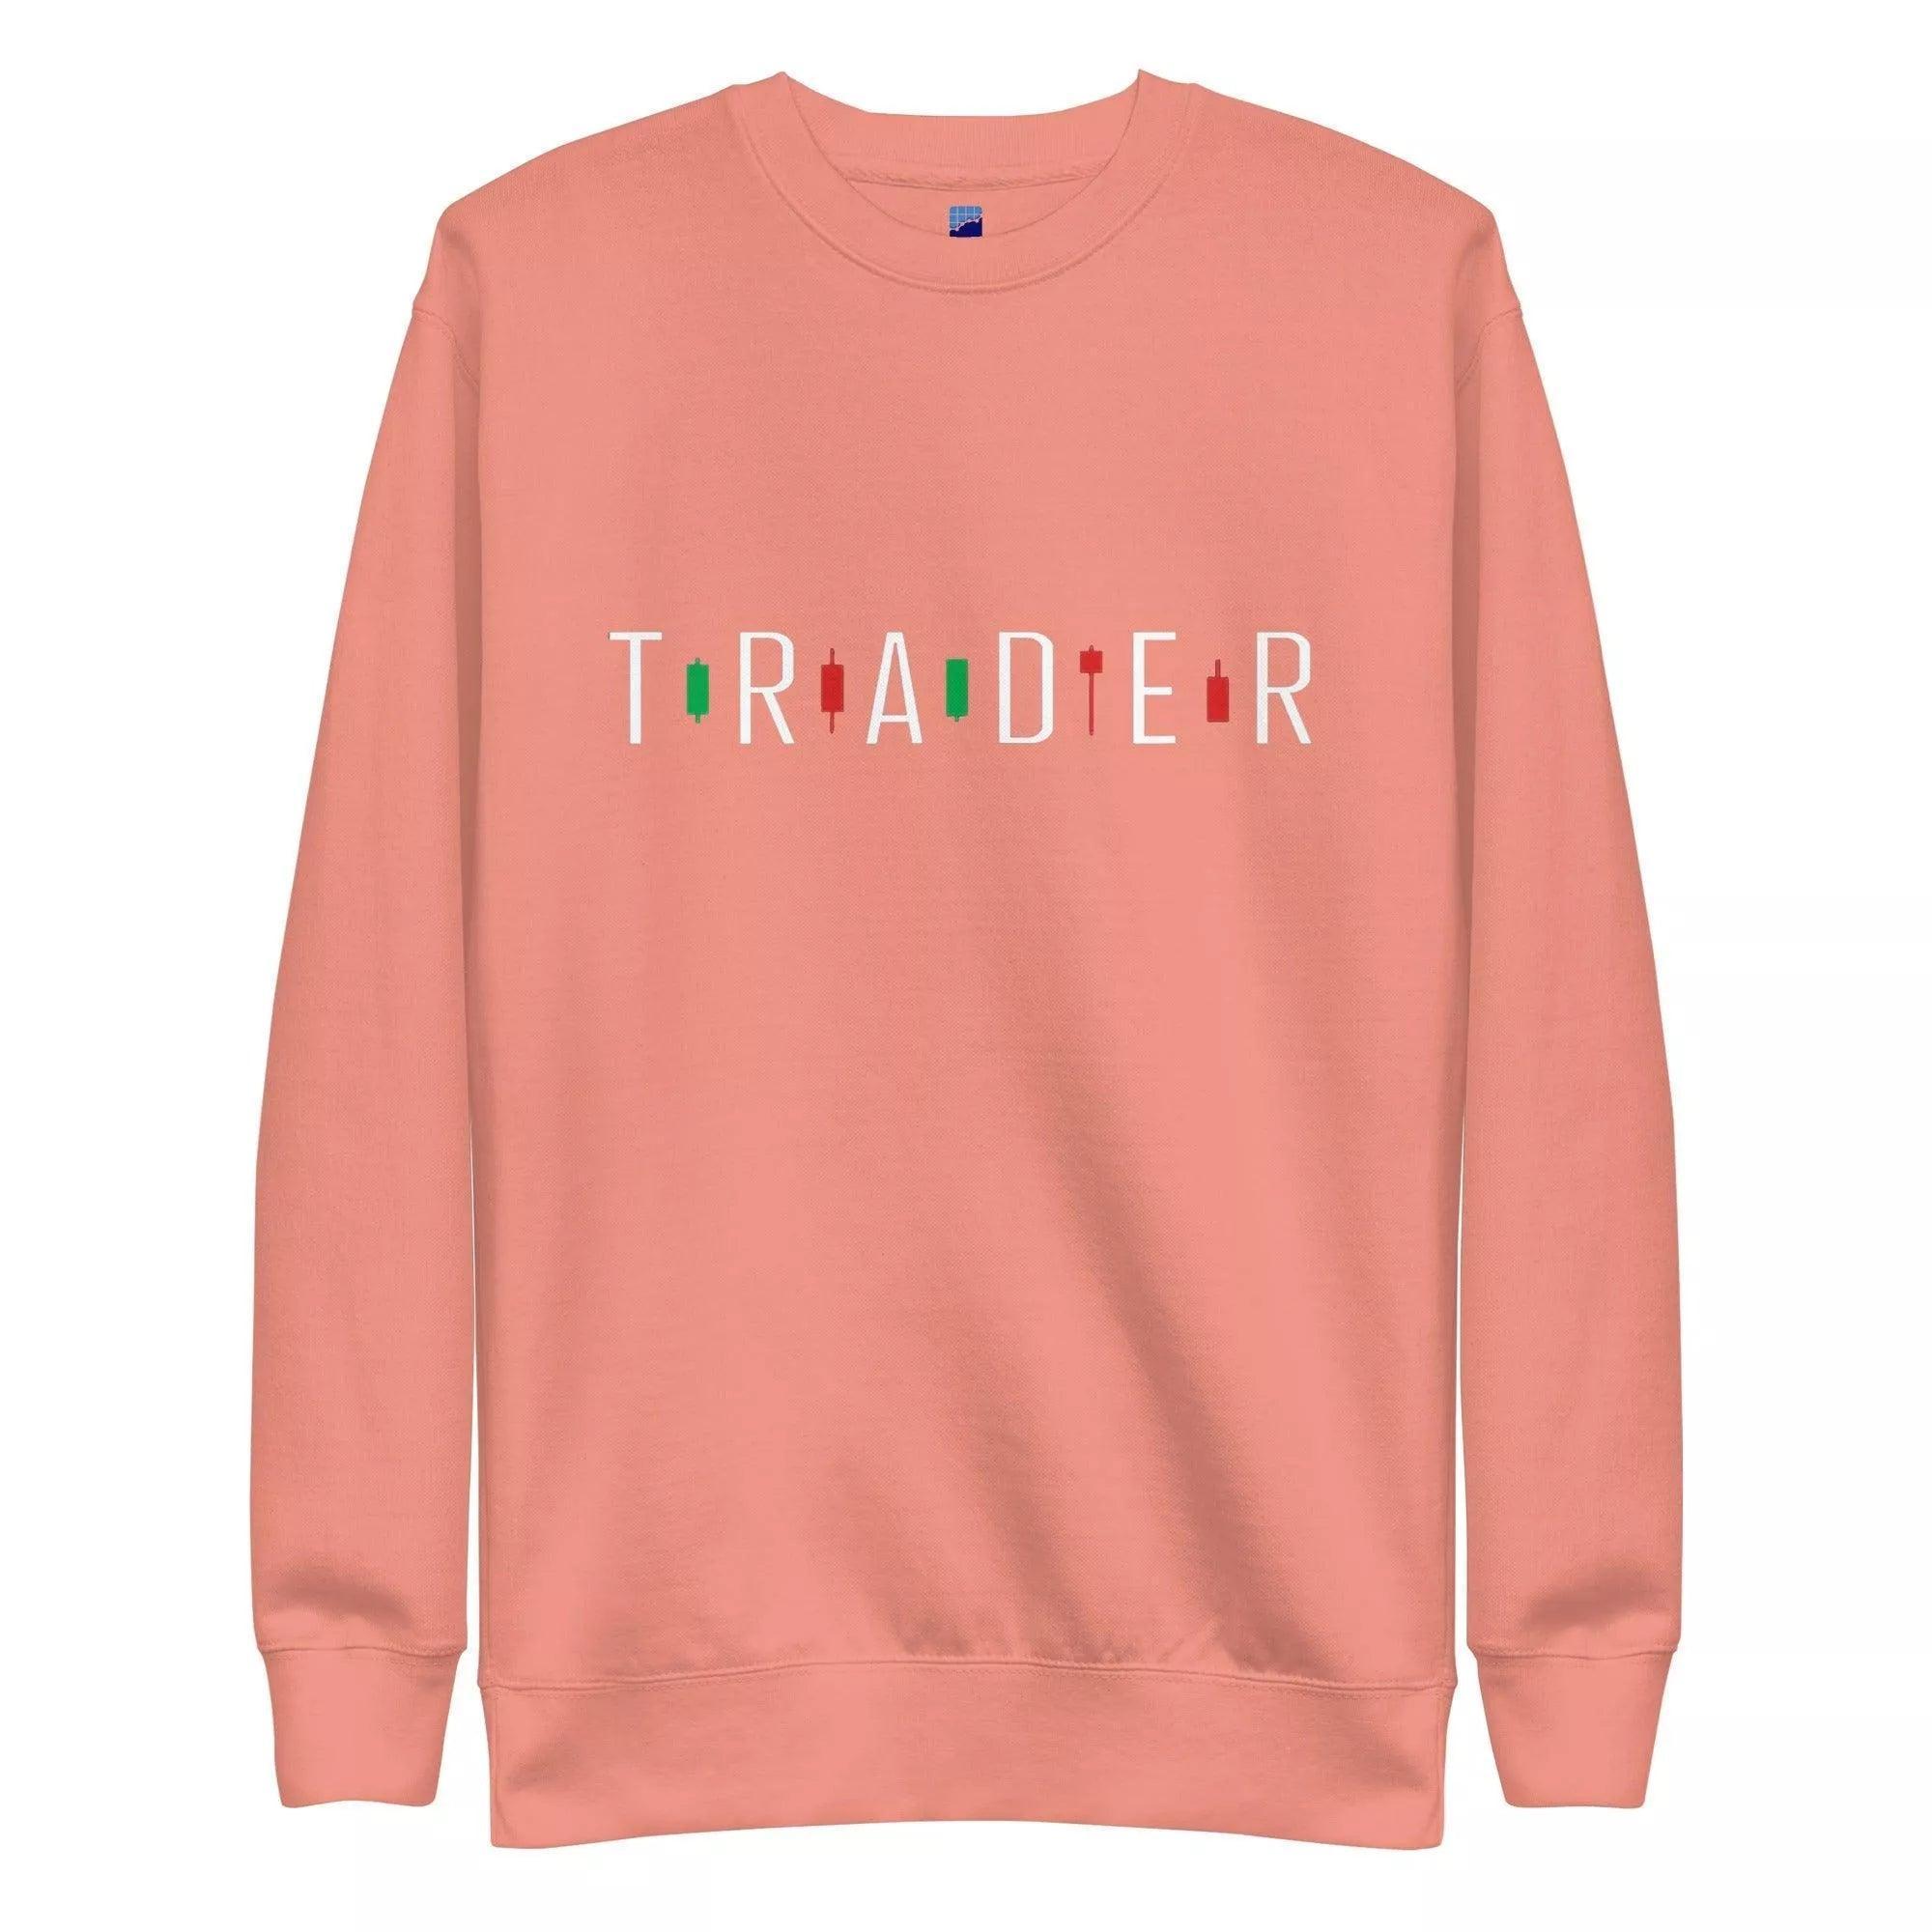 Trader Sweatshirt - InvestmenTees